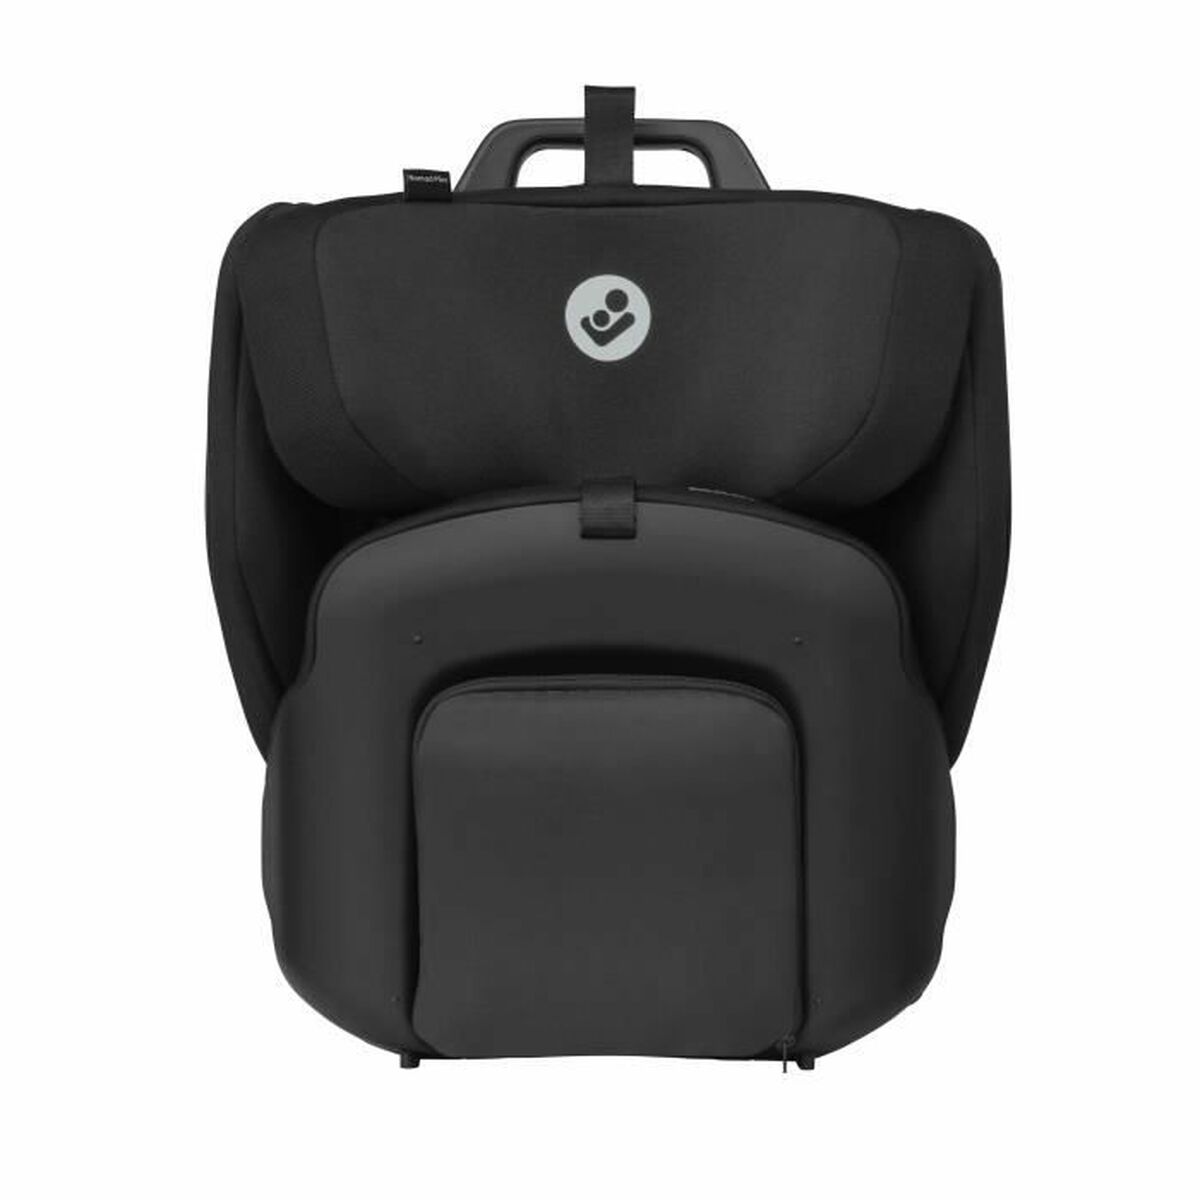 Car Chair Maxicosi Nomad Plus Black